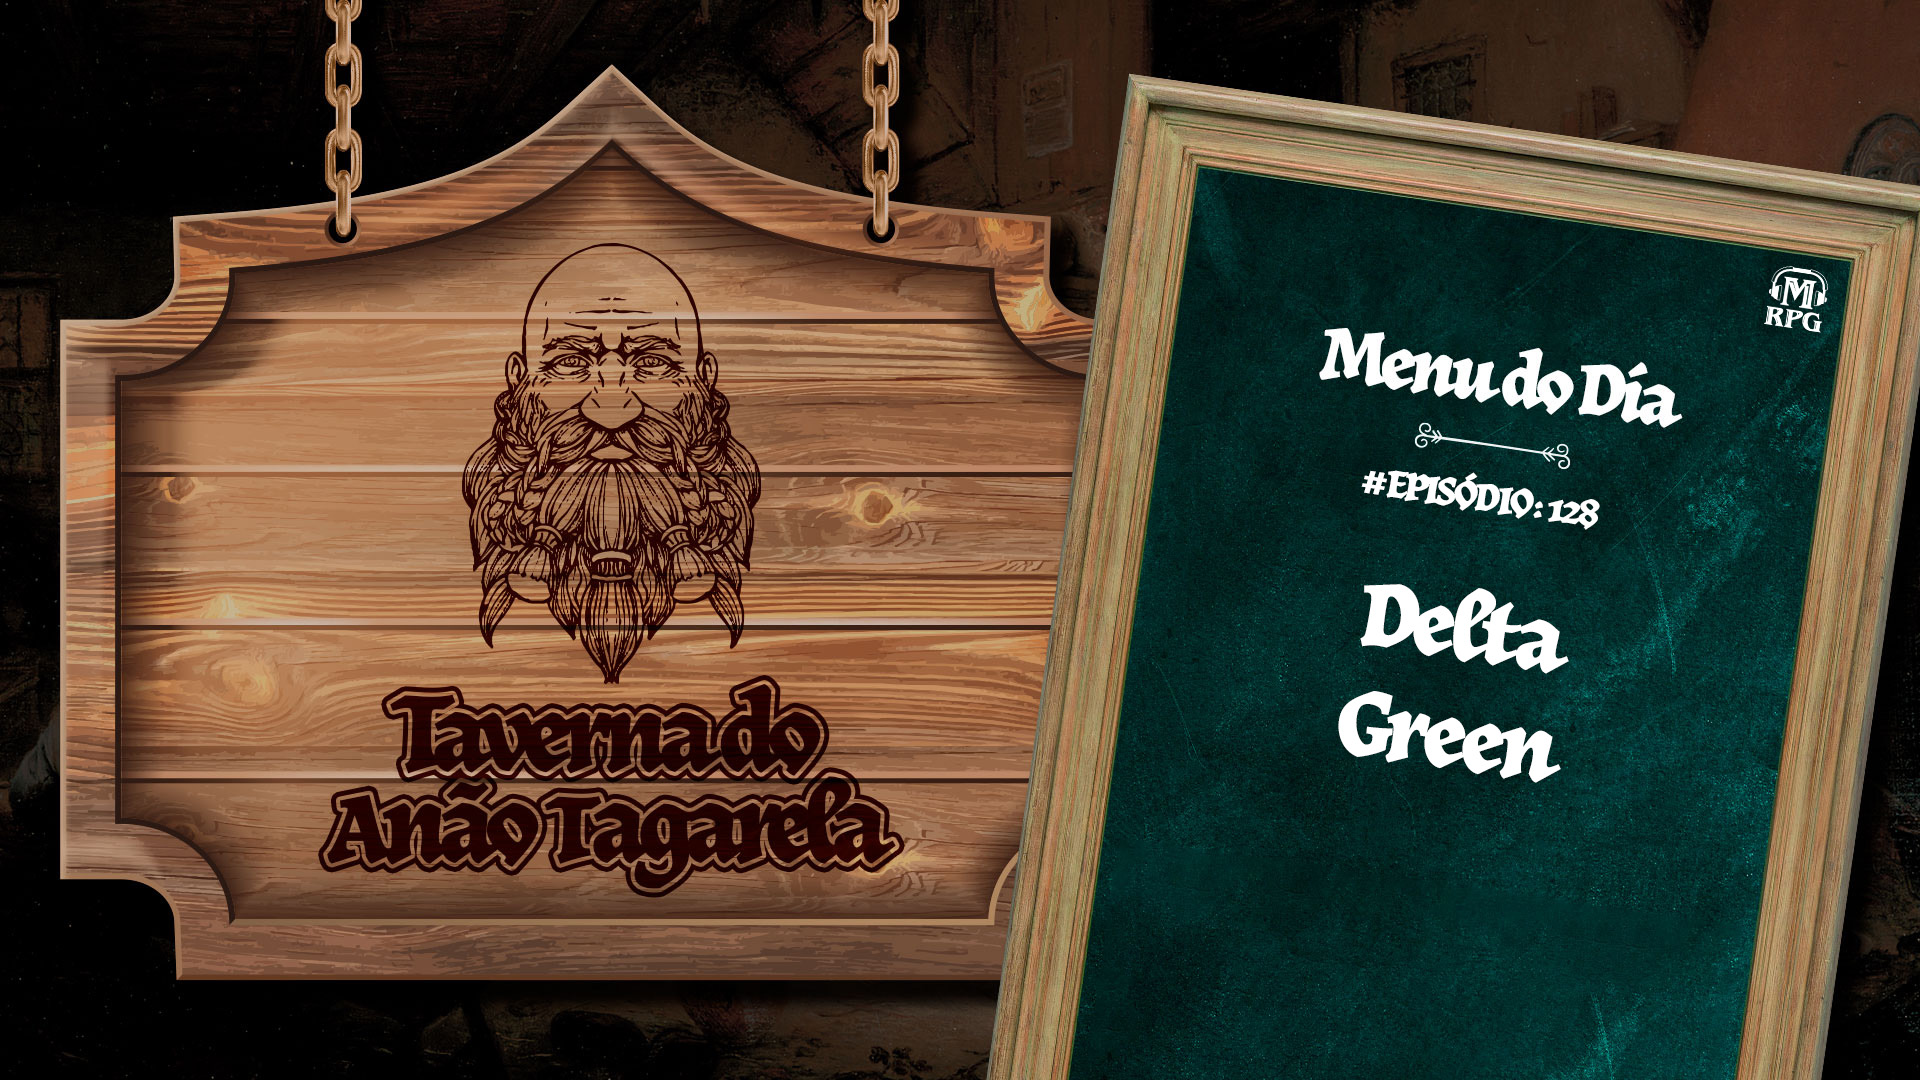 Delta Green – Taverna do Anão Tagarela #128